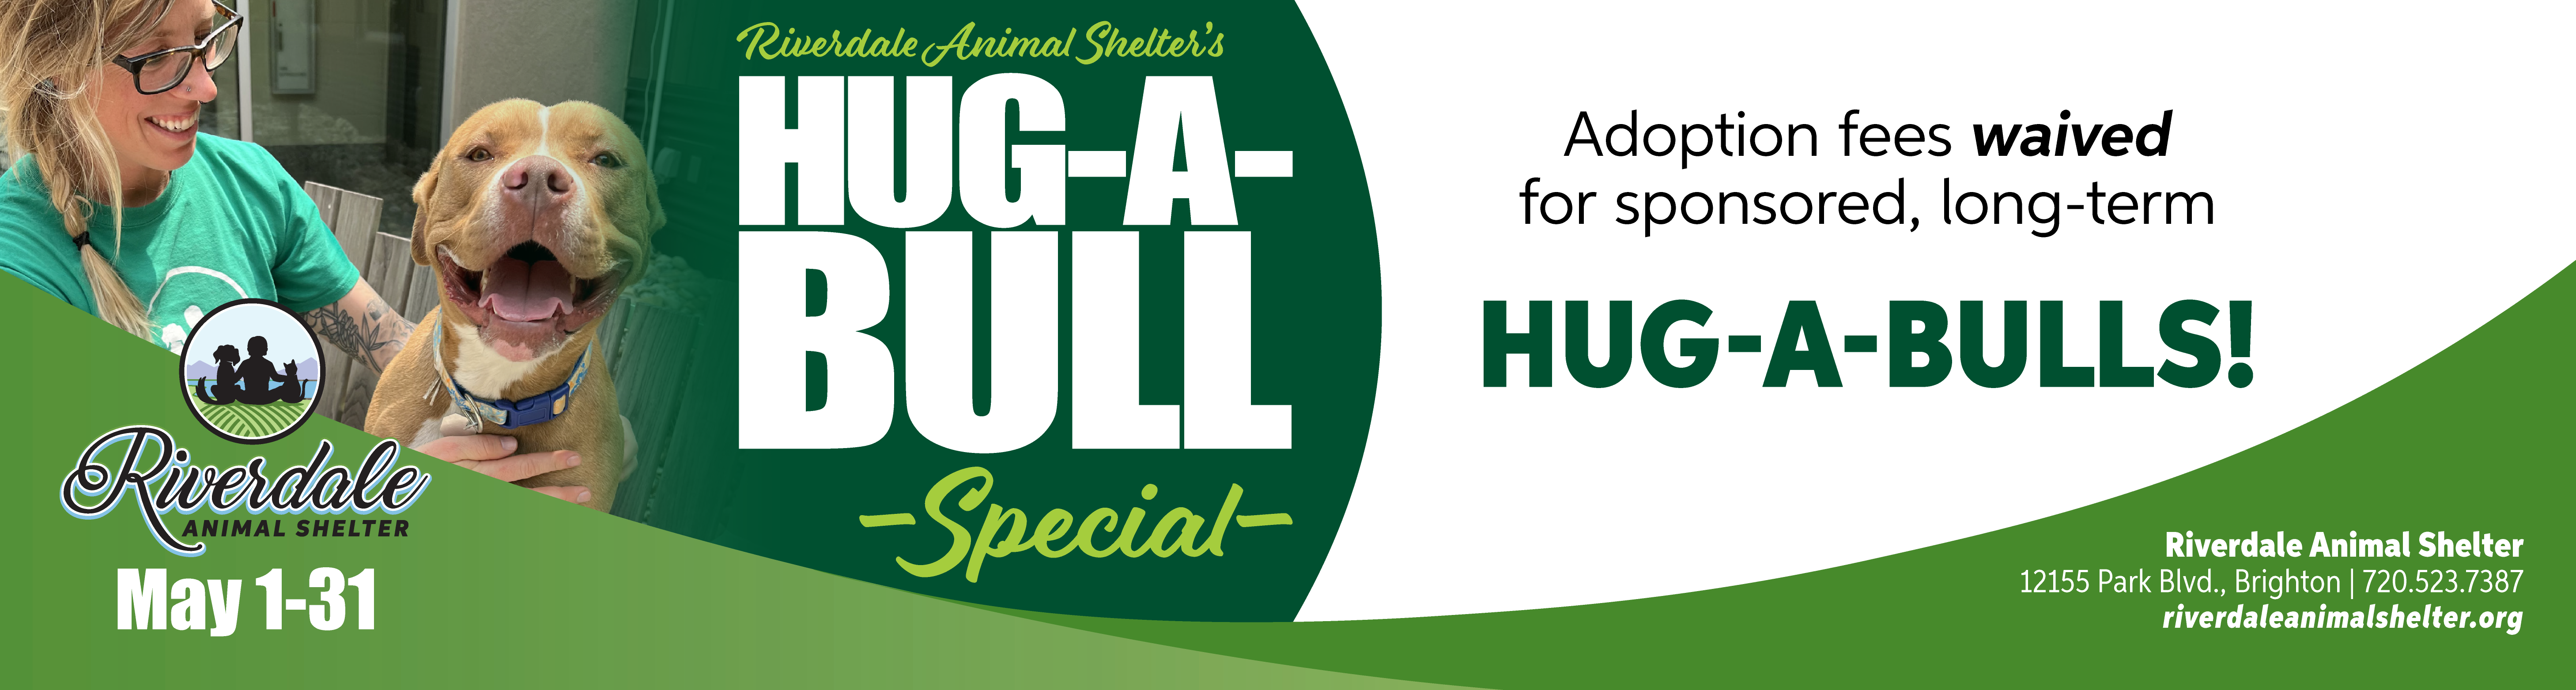 Hug A Bull Adoption Special